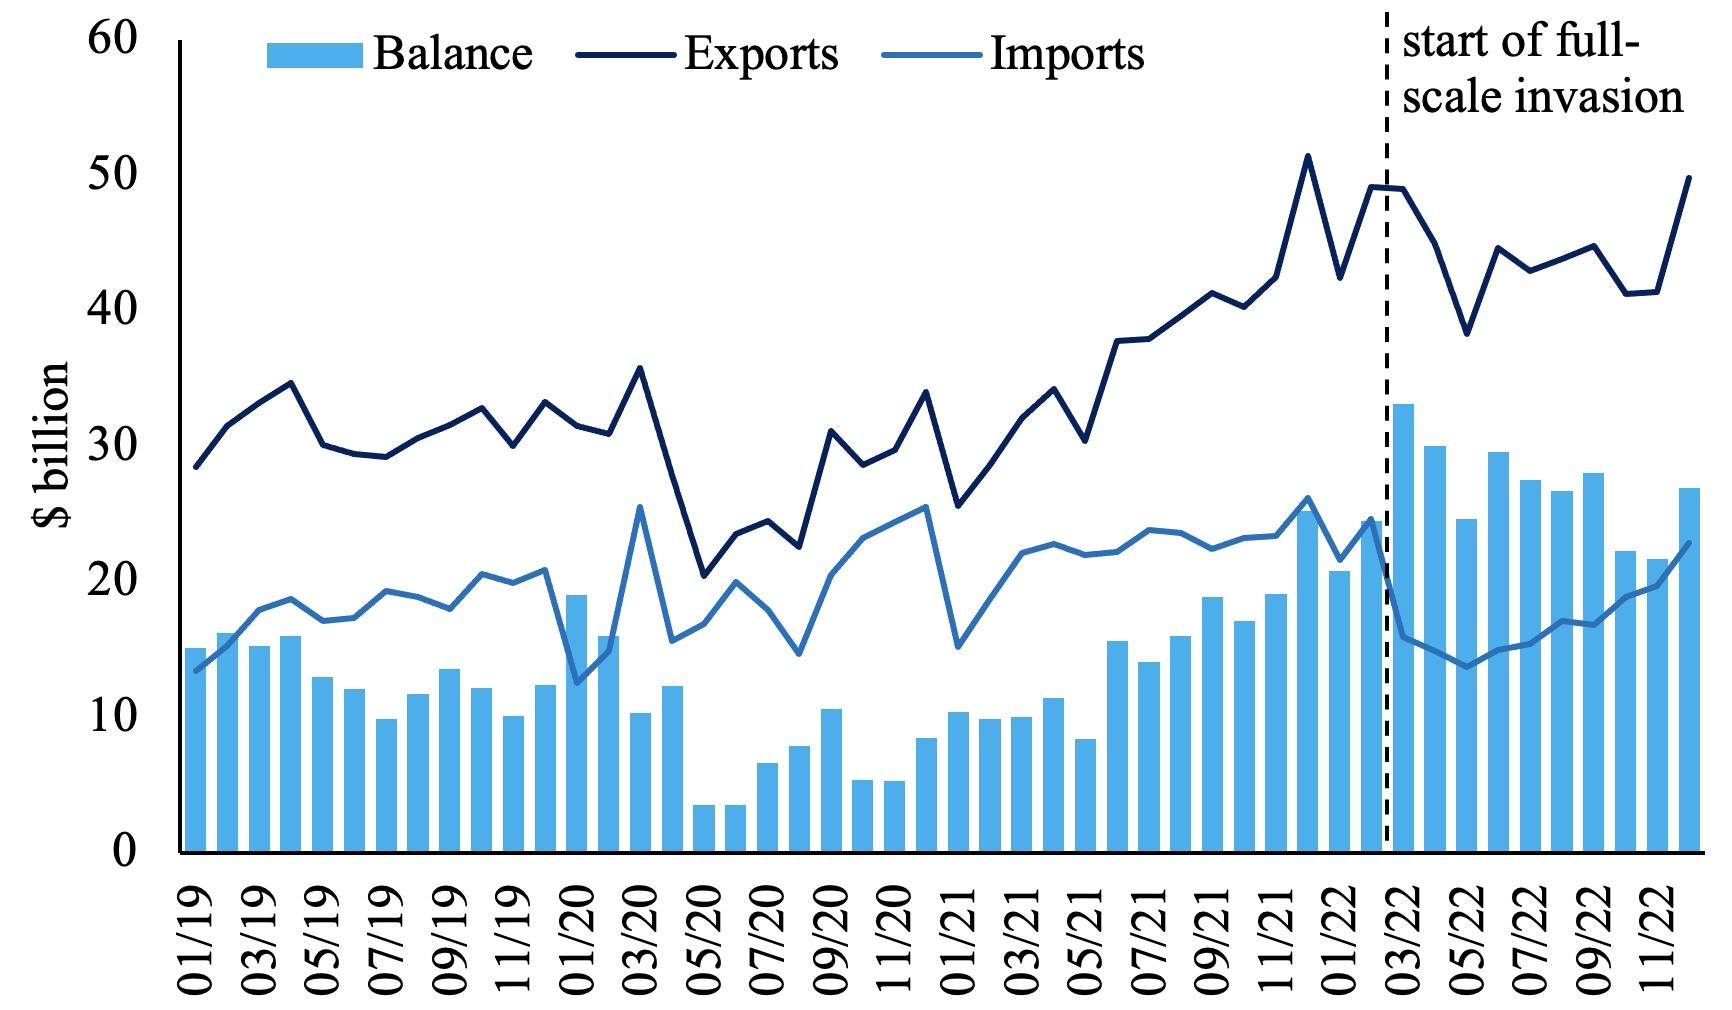 Figure 1 Summary of Russian trade